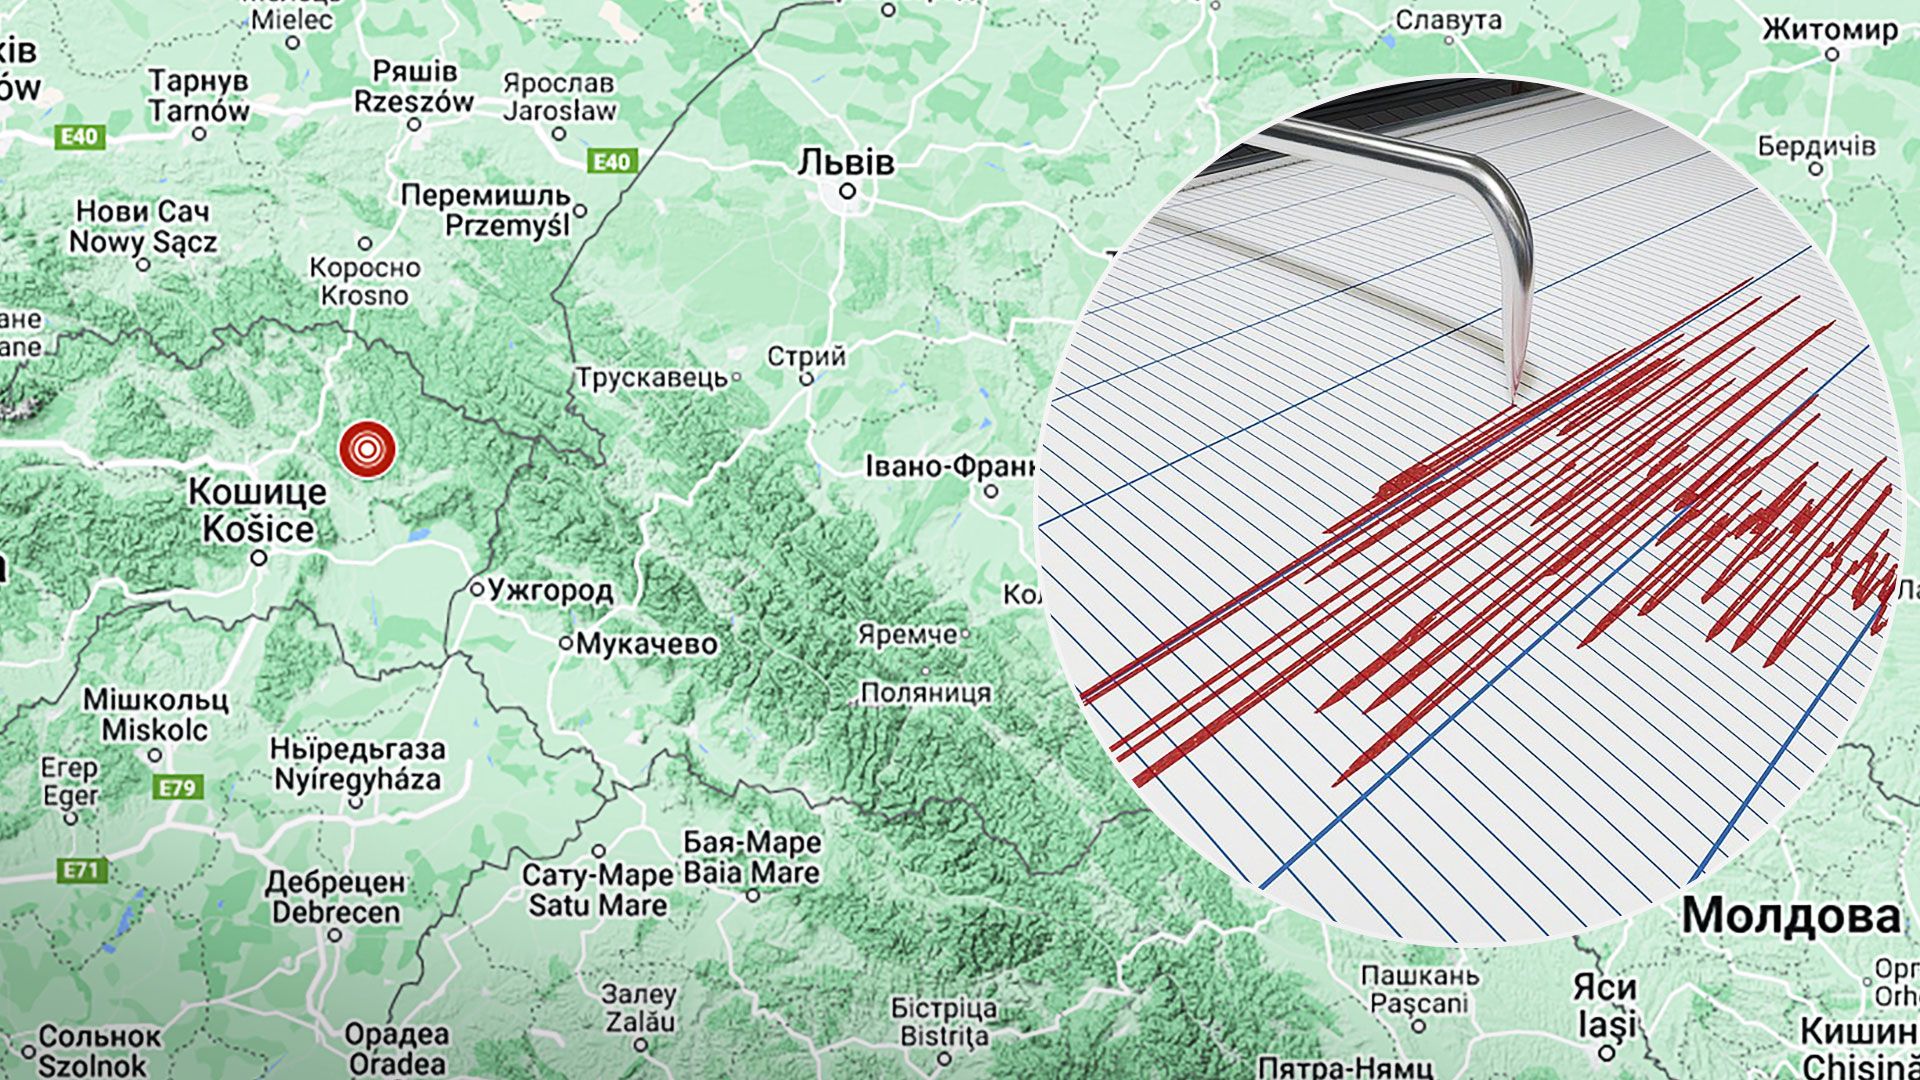 Ученые рассказали детали о землетрясении в Украине 9 октября - Новости Украины - 24 Канал